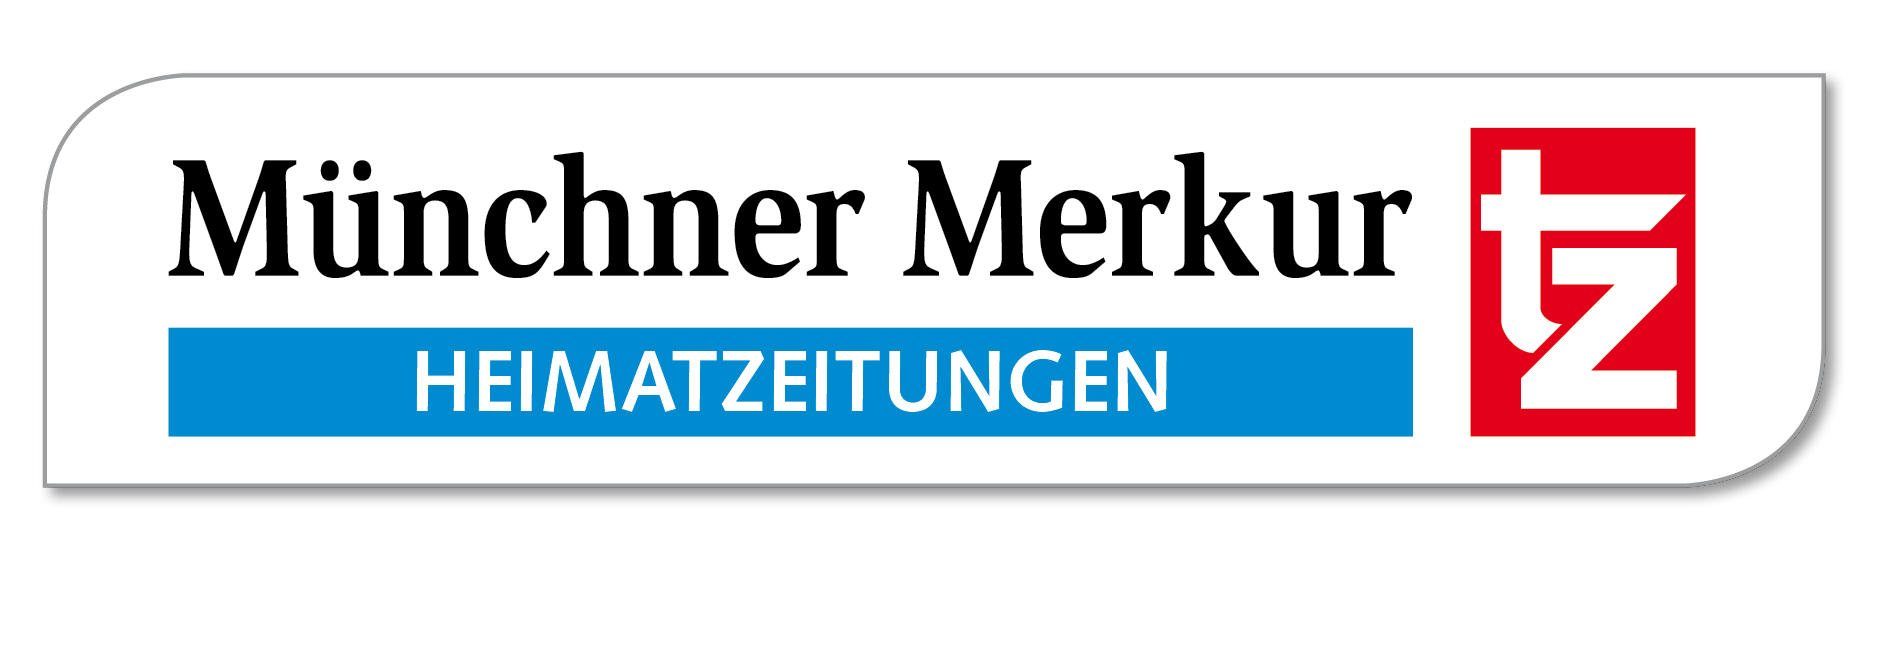 Muenchner Merkur tz Logo.png